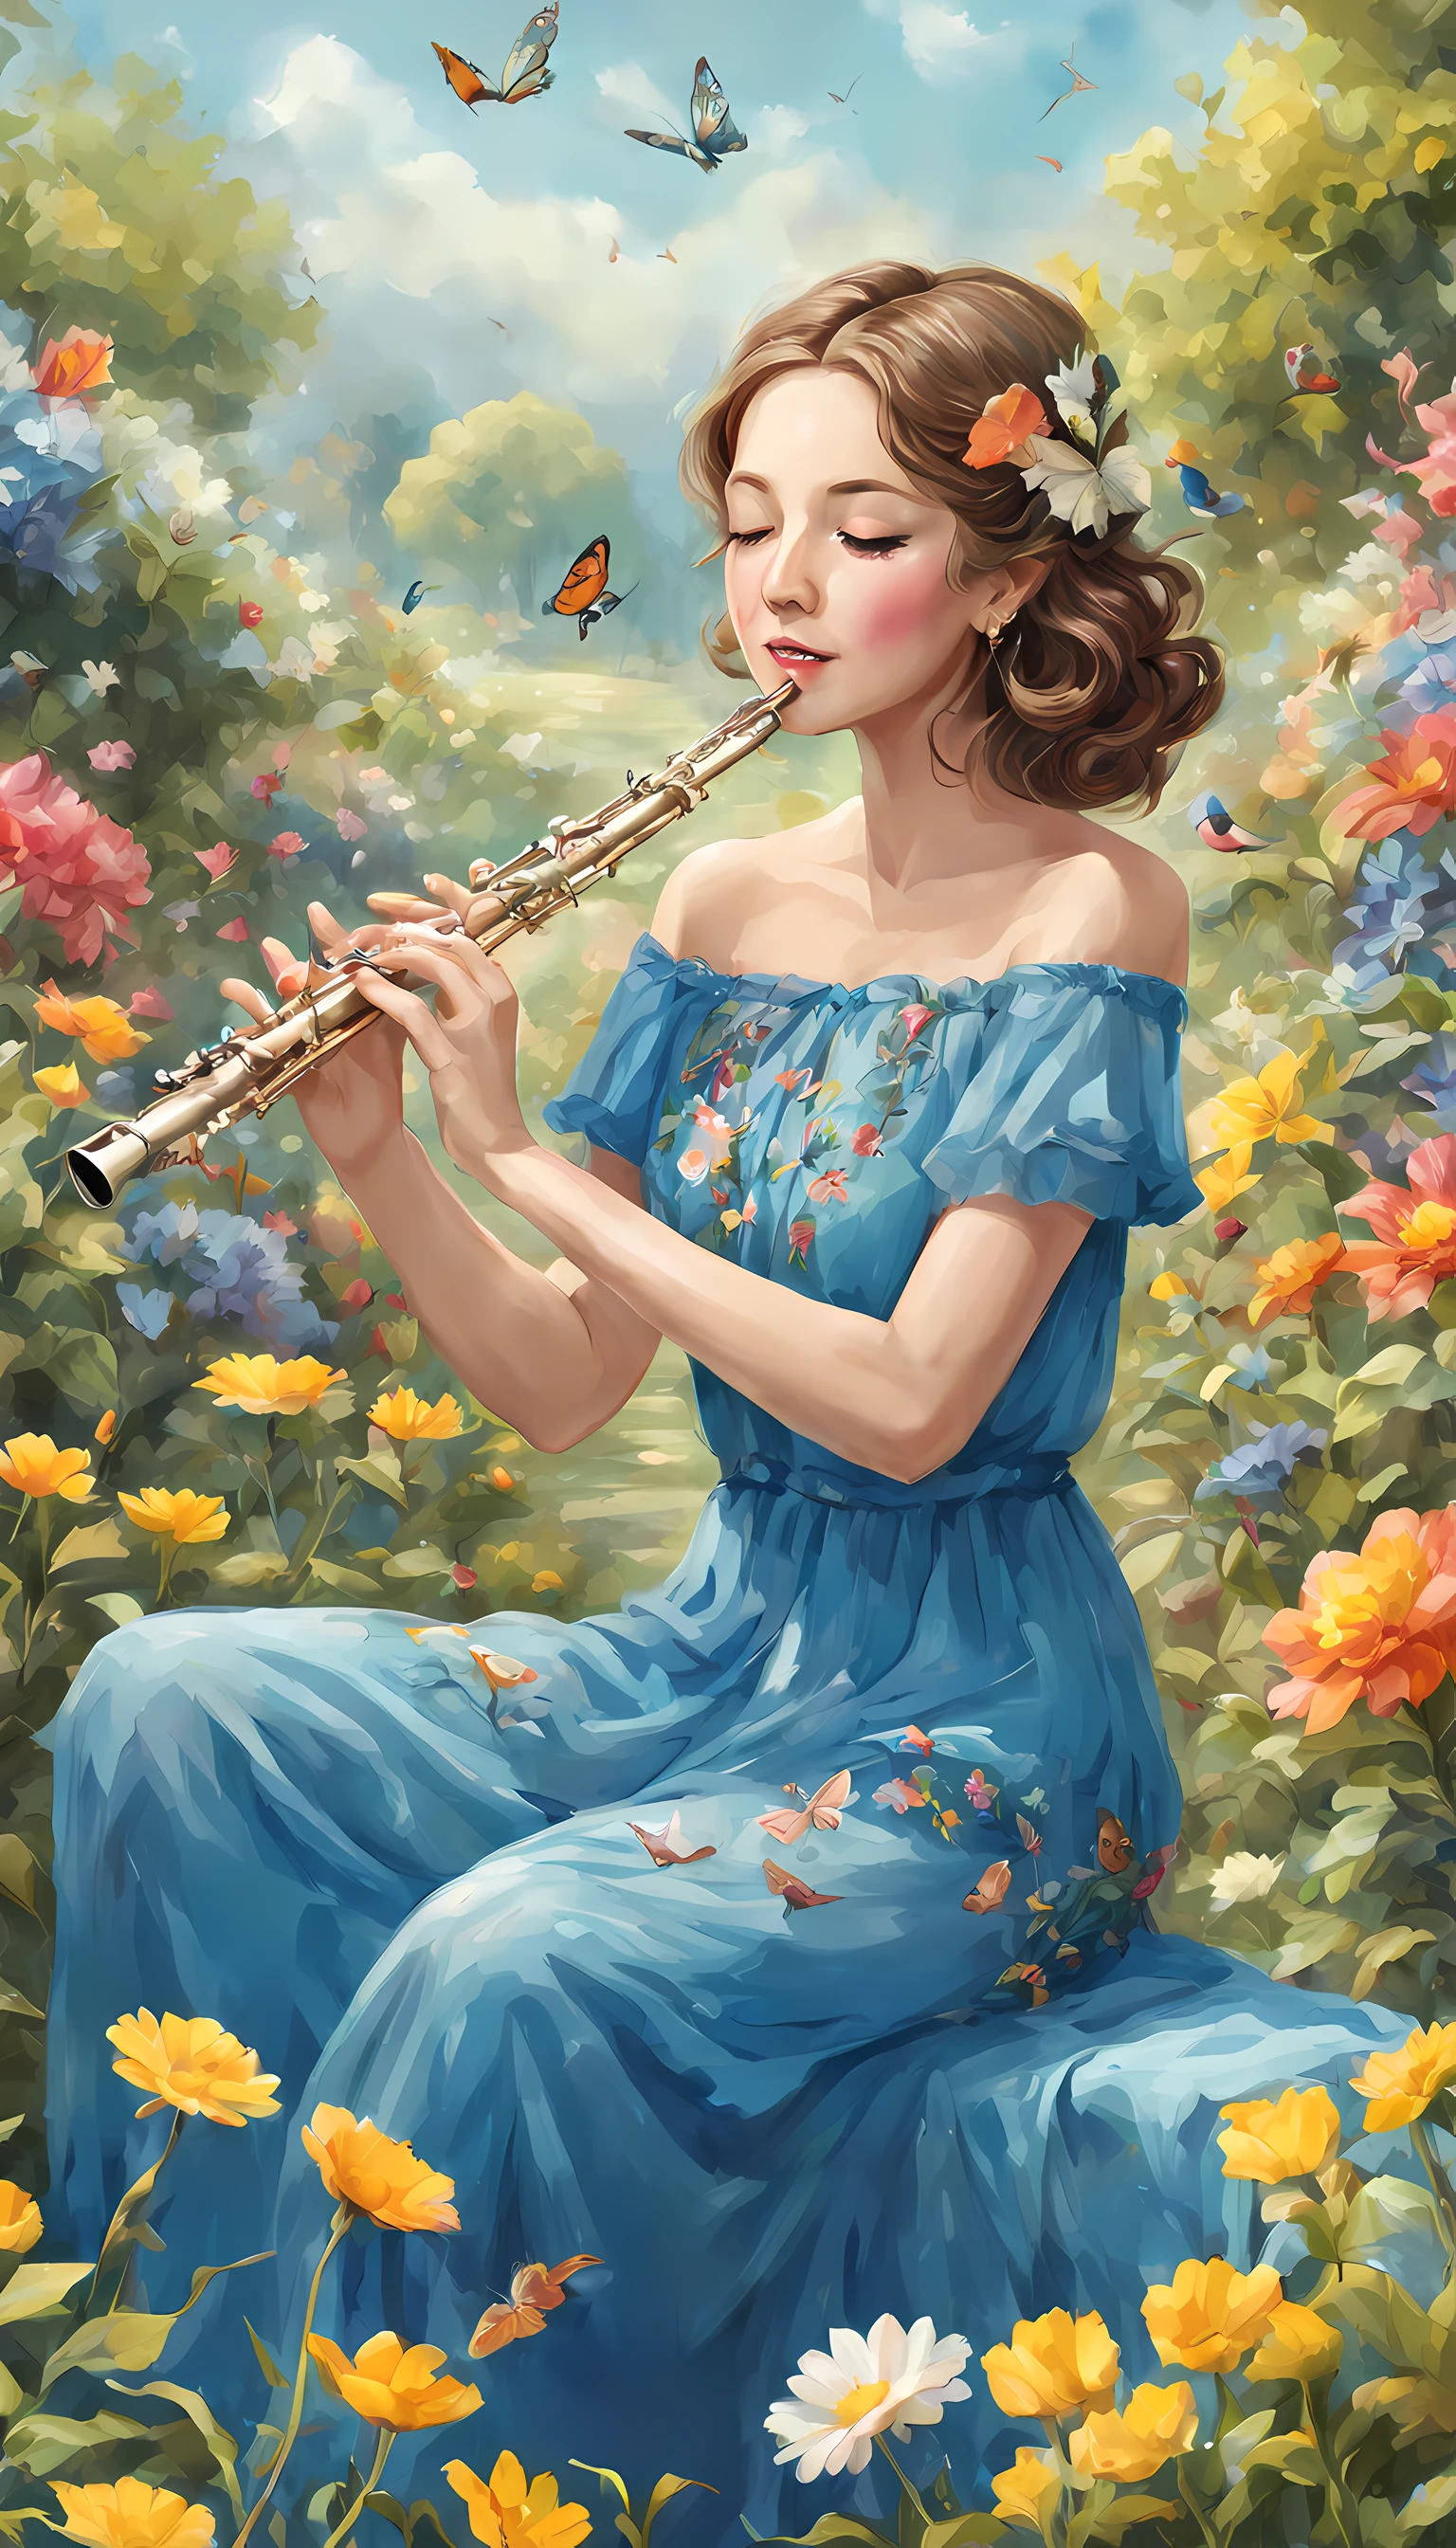 一個神奇的視覺傑作，講述了一個可愛的女人在花園裡吹笛子的故事, 藍色洋裝,豐富多彩的,優雅的, 蝴蝶, 哈普内斯,喜悅, 風,快乐的色彩, 雙手放在長笛上,貝雷帽,完美的風景, 華麗的,花朵, 鳥類, 完美的臉,優雅的,風, 錯綜複雜, (完美的臉)